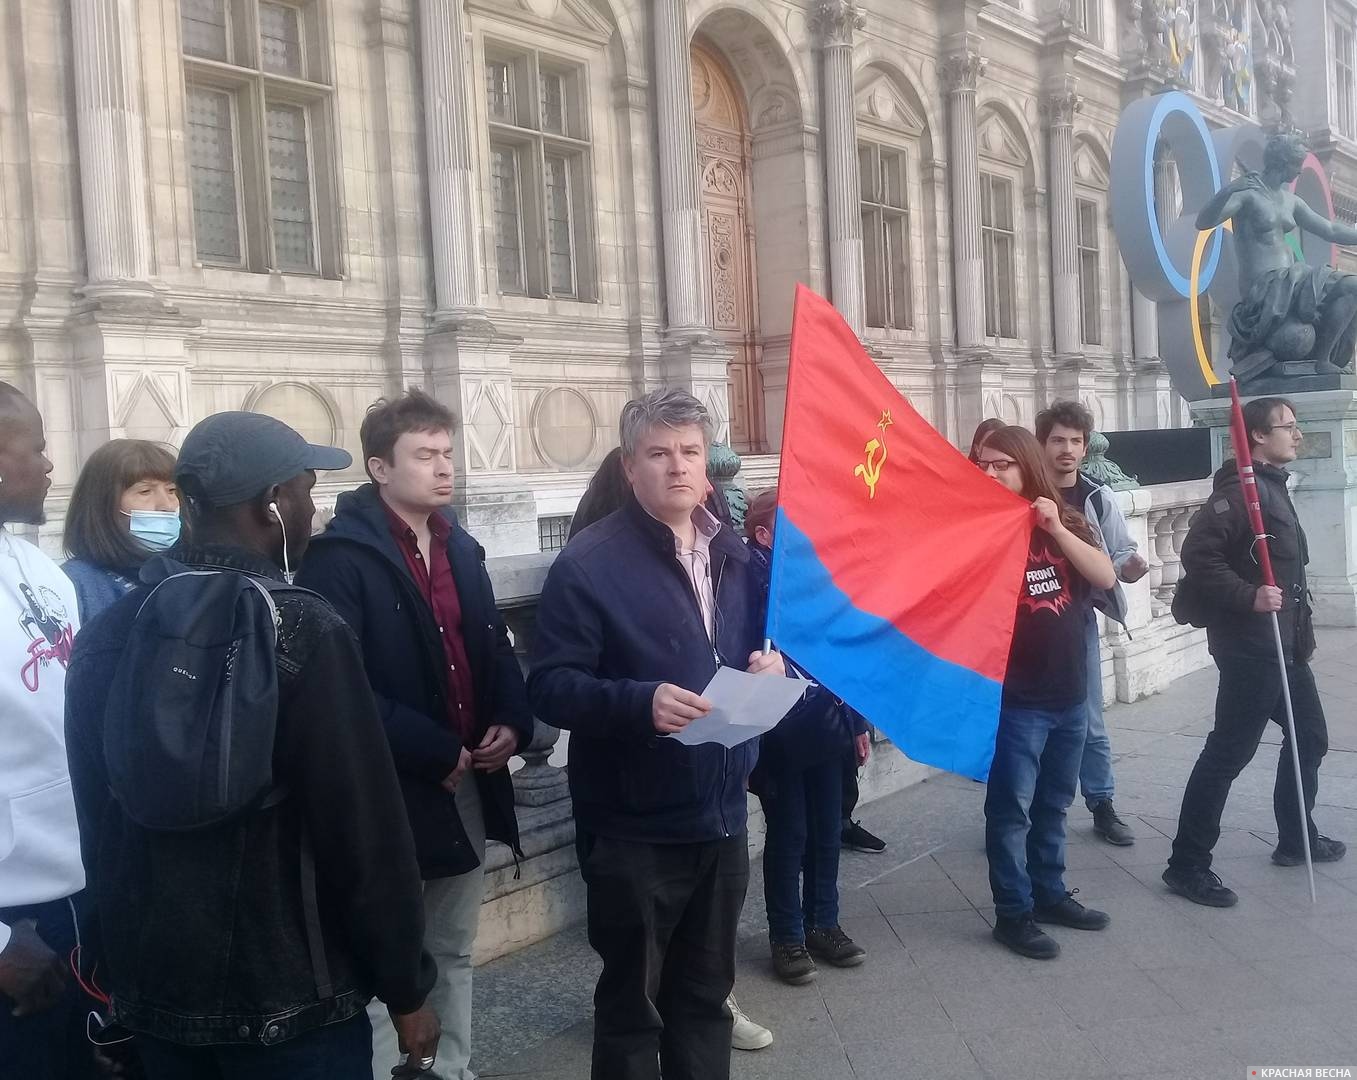 Протестующие зачитывают обращение перед мэрией Парижа